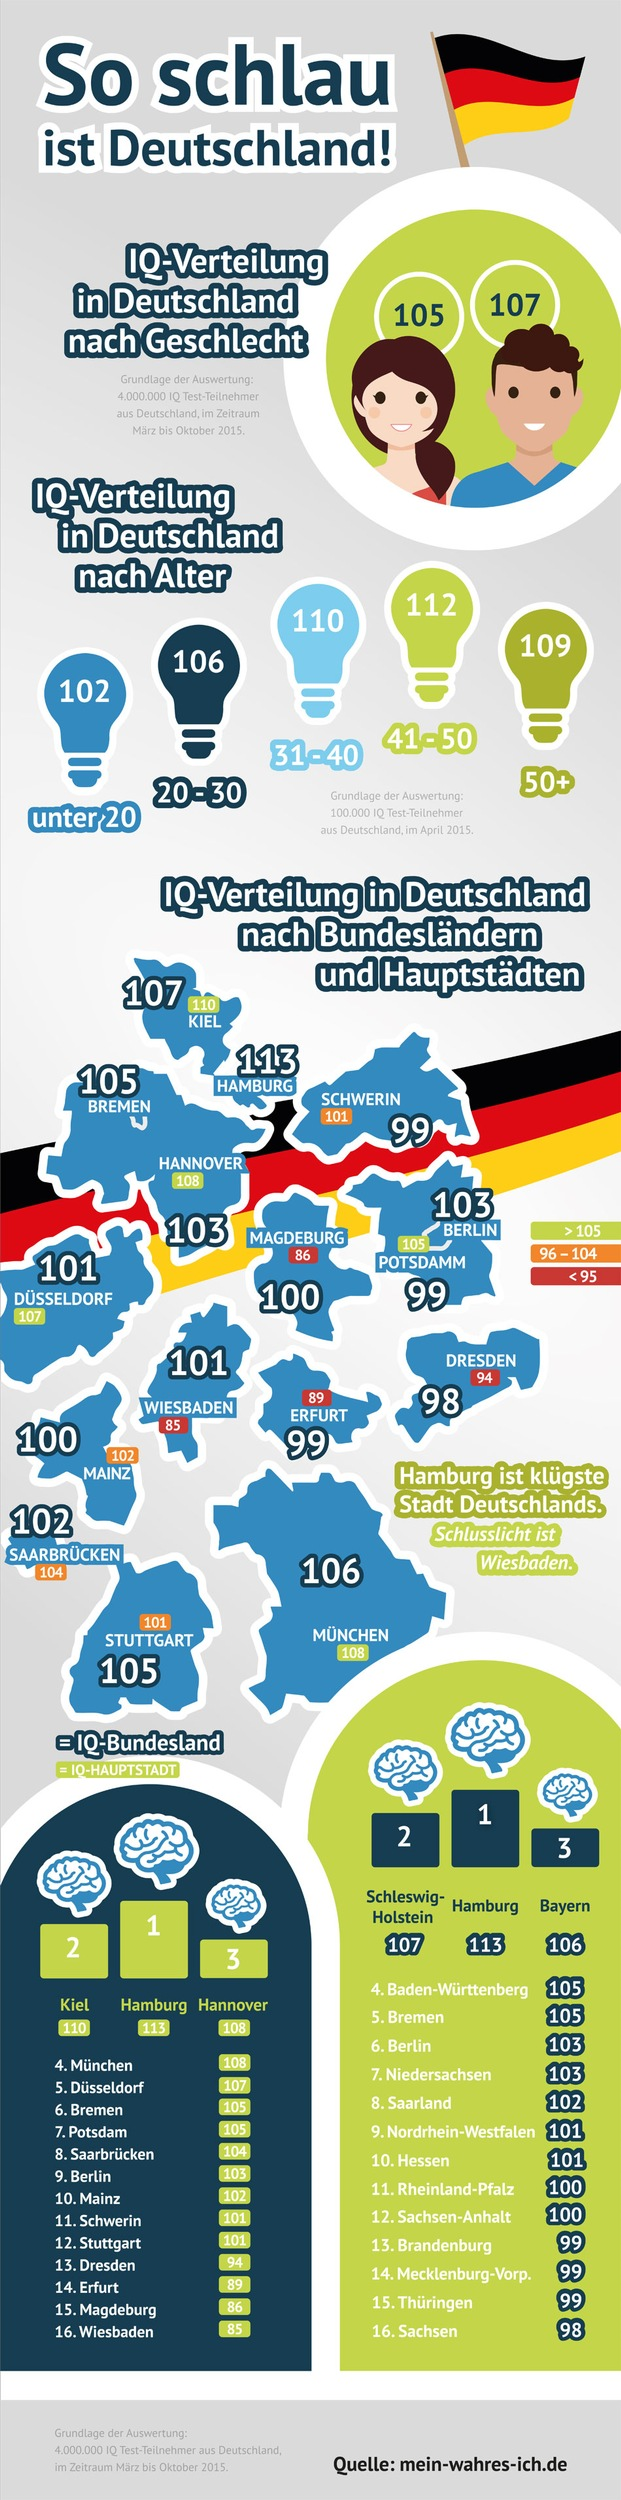 Aktuelle Infografik: Sind Männer oder Frauen schlauer? (Foto: obs/fabulabs GmbH/Mein-wahres-Ich.de)